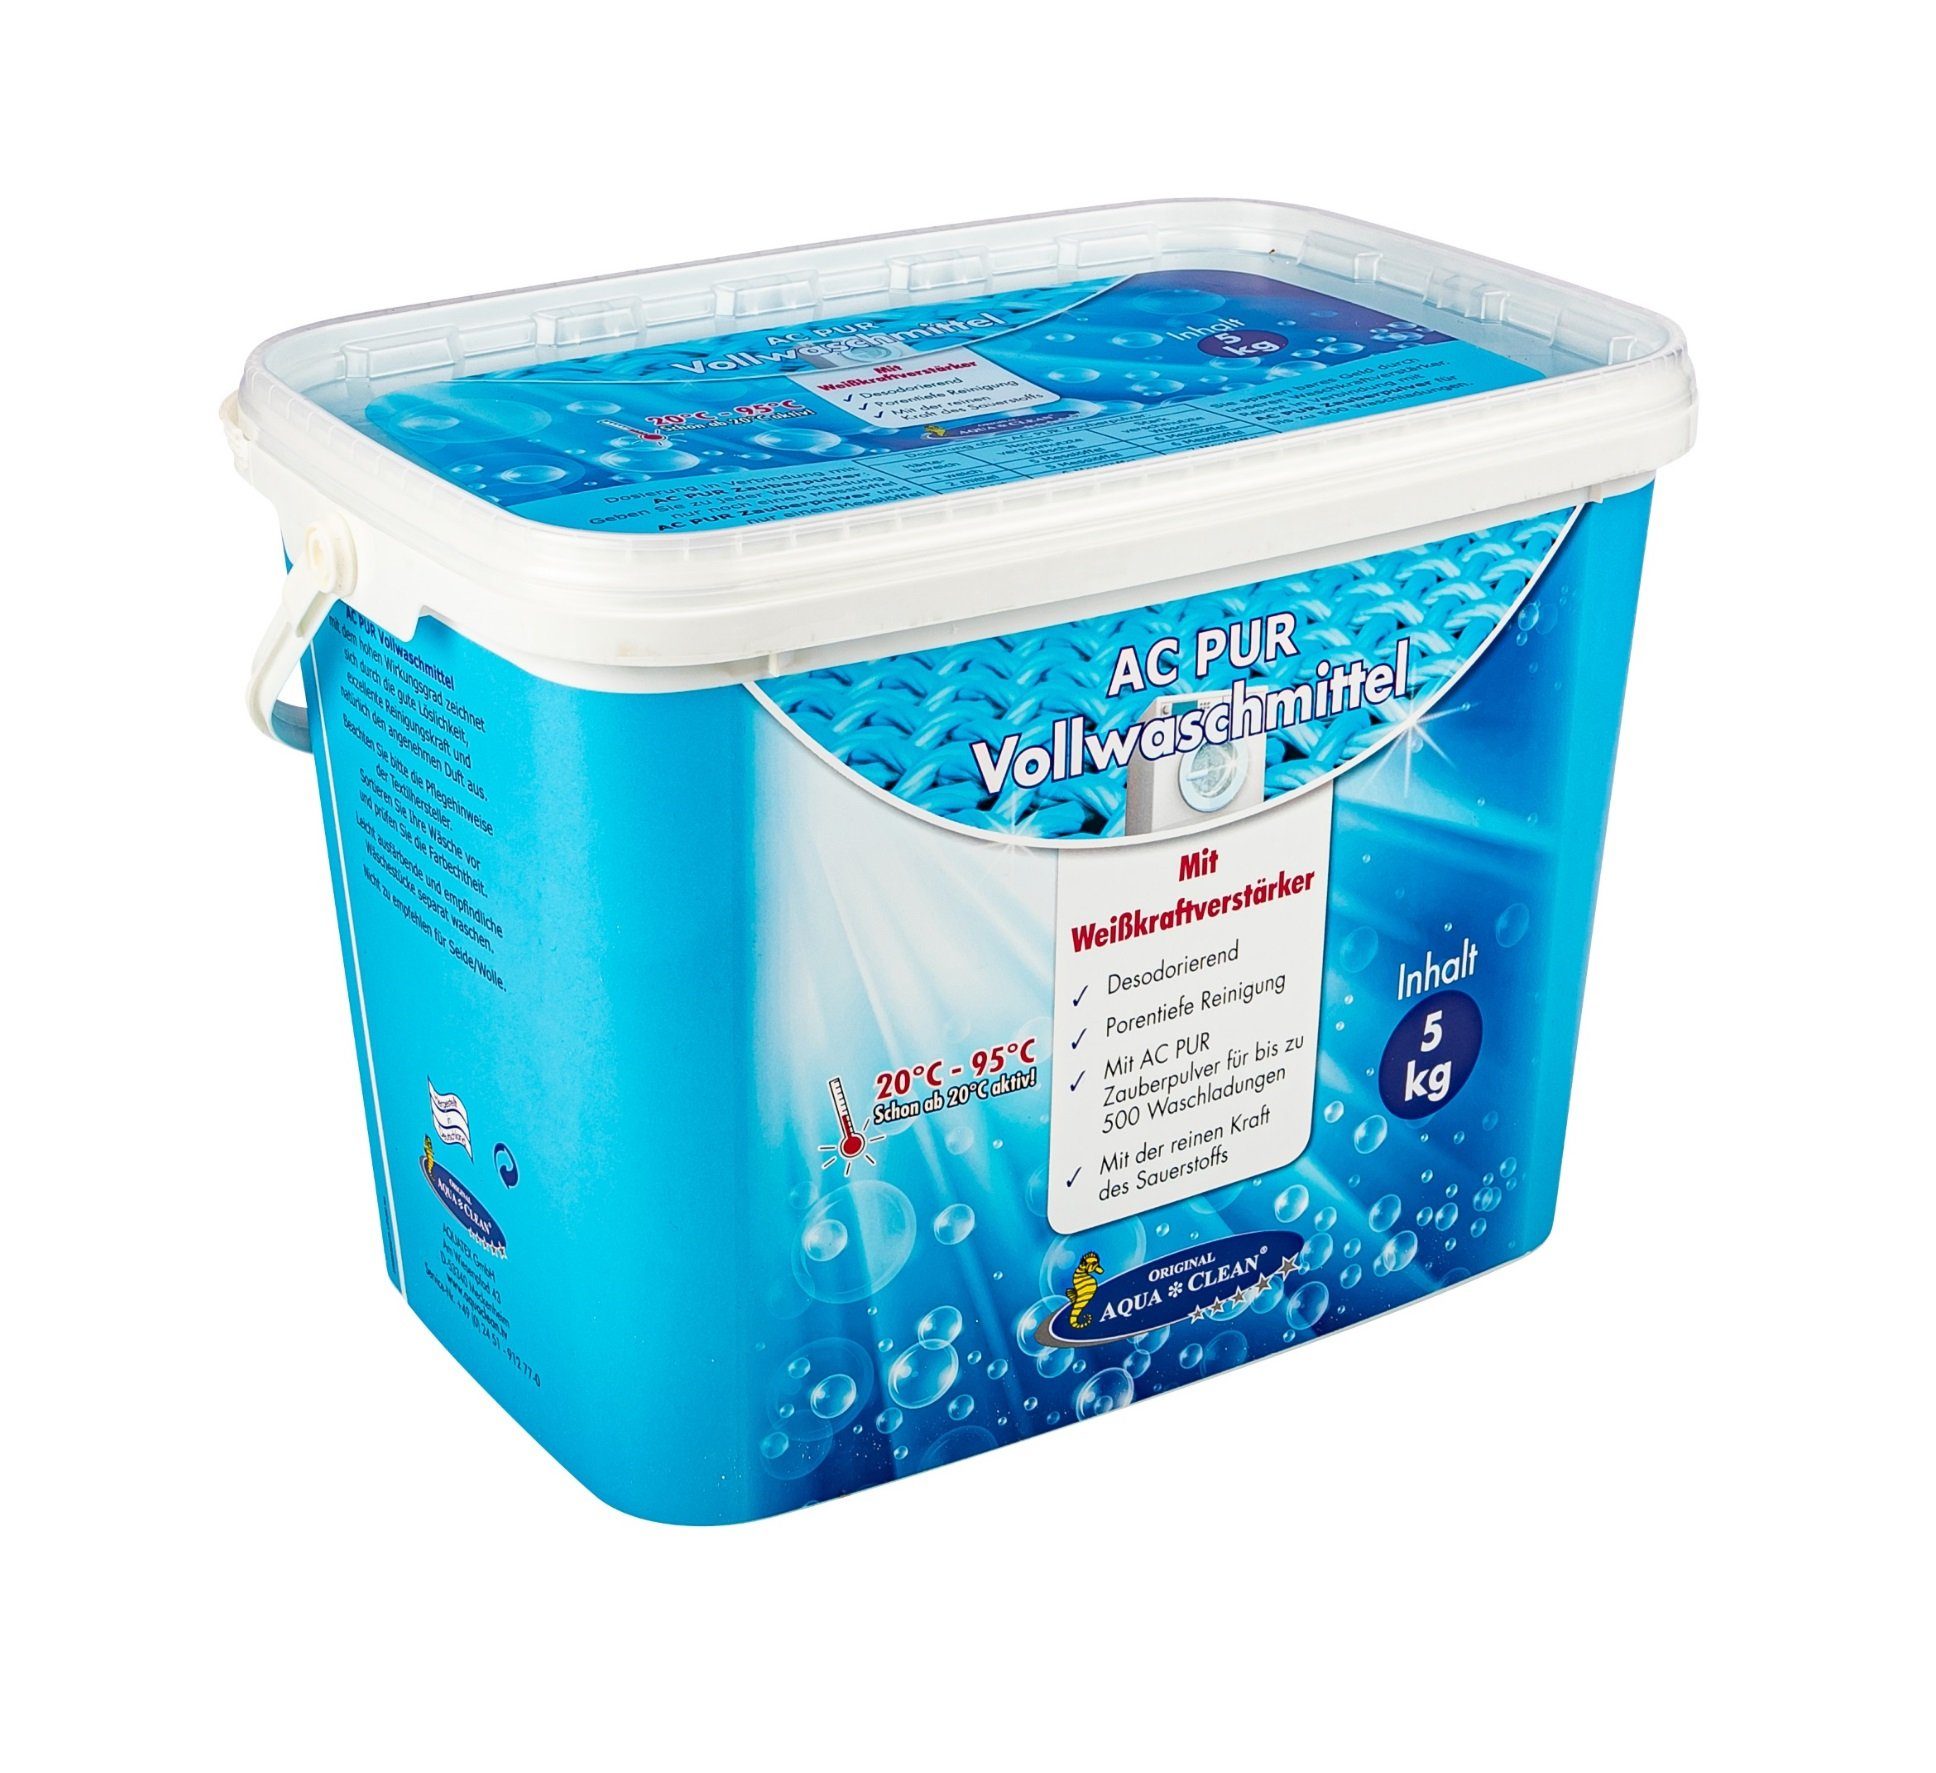 AQUA CLEAN AC PUR Vollwaschmittel Vollwaschmittel (mit Farb-& Faserschutz und Weisskraftverstärker 5kg) | Waschmittel